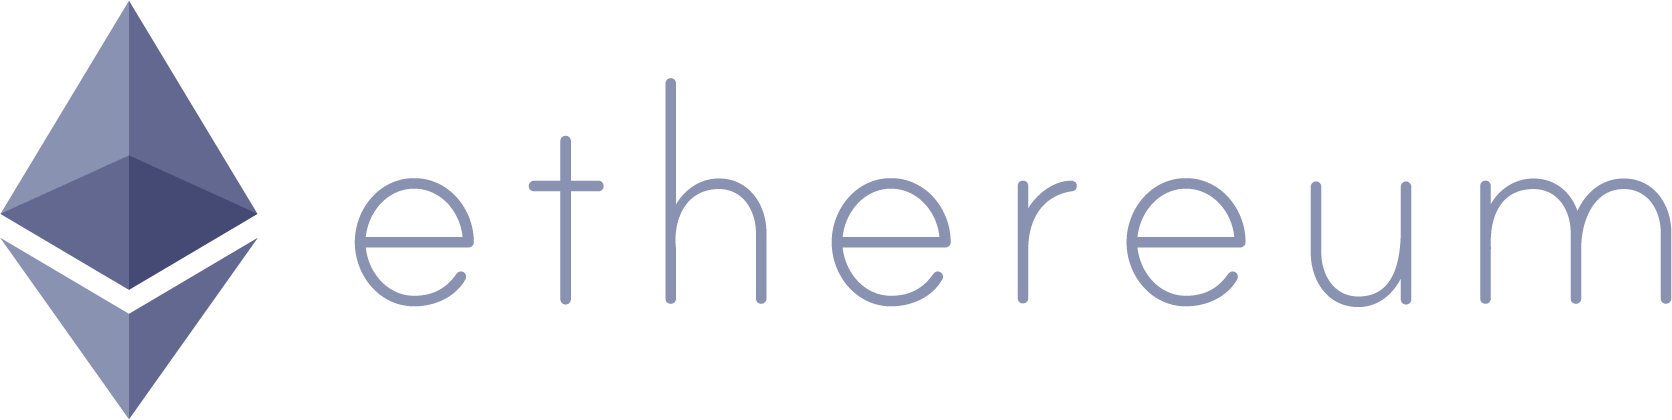 Ethereum-y-otras-Altcoins-en-la-mira-de-los-inversores-en-2017.png